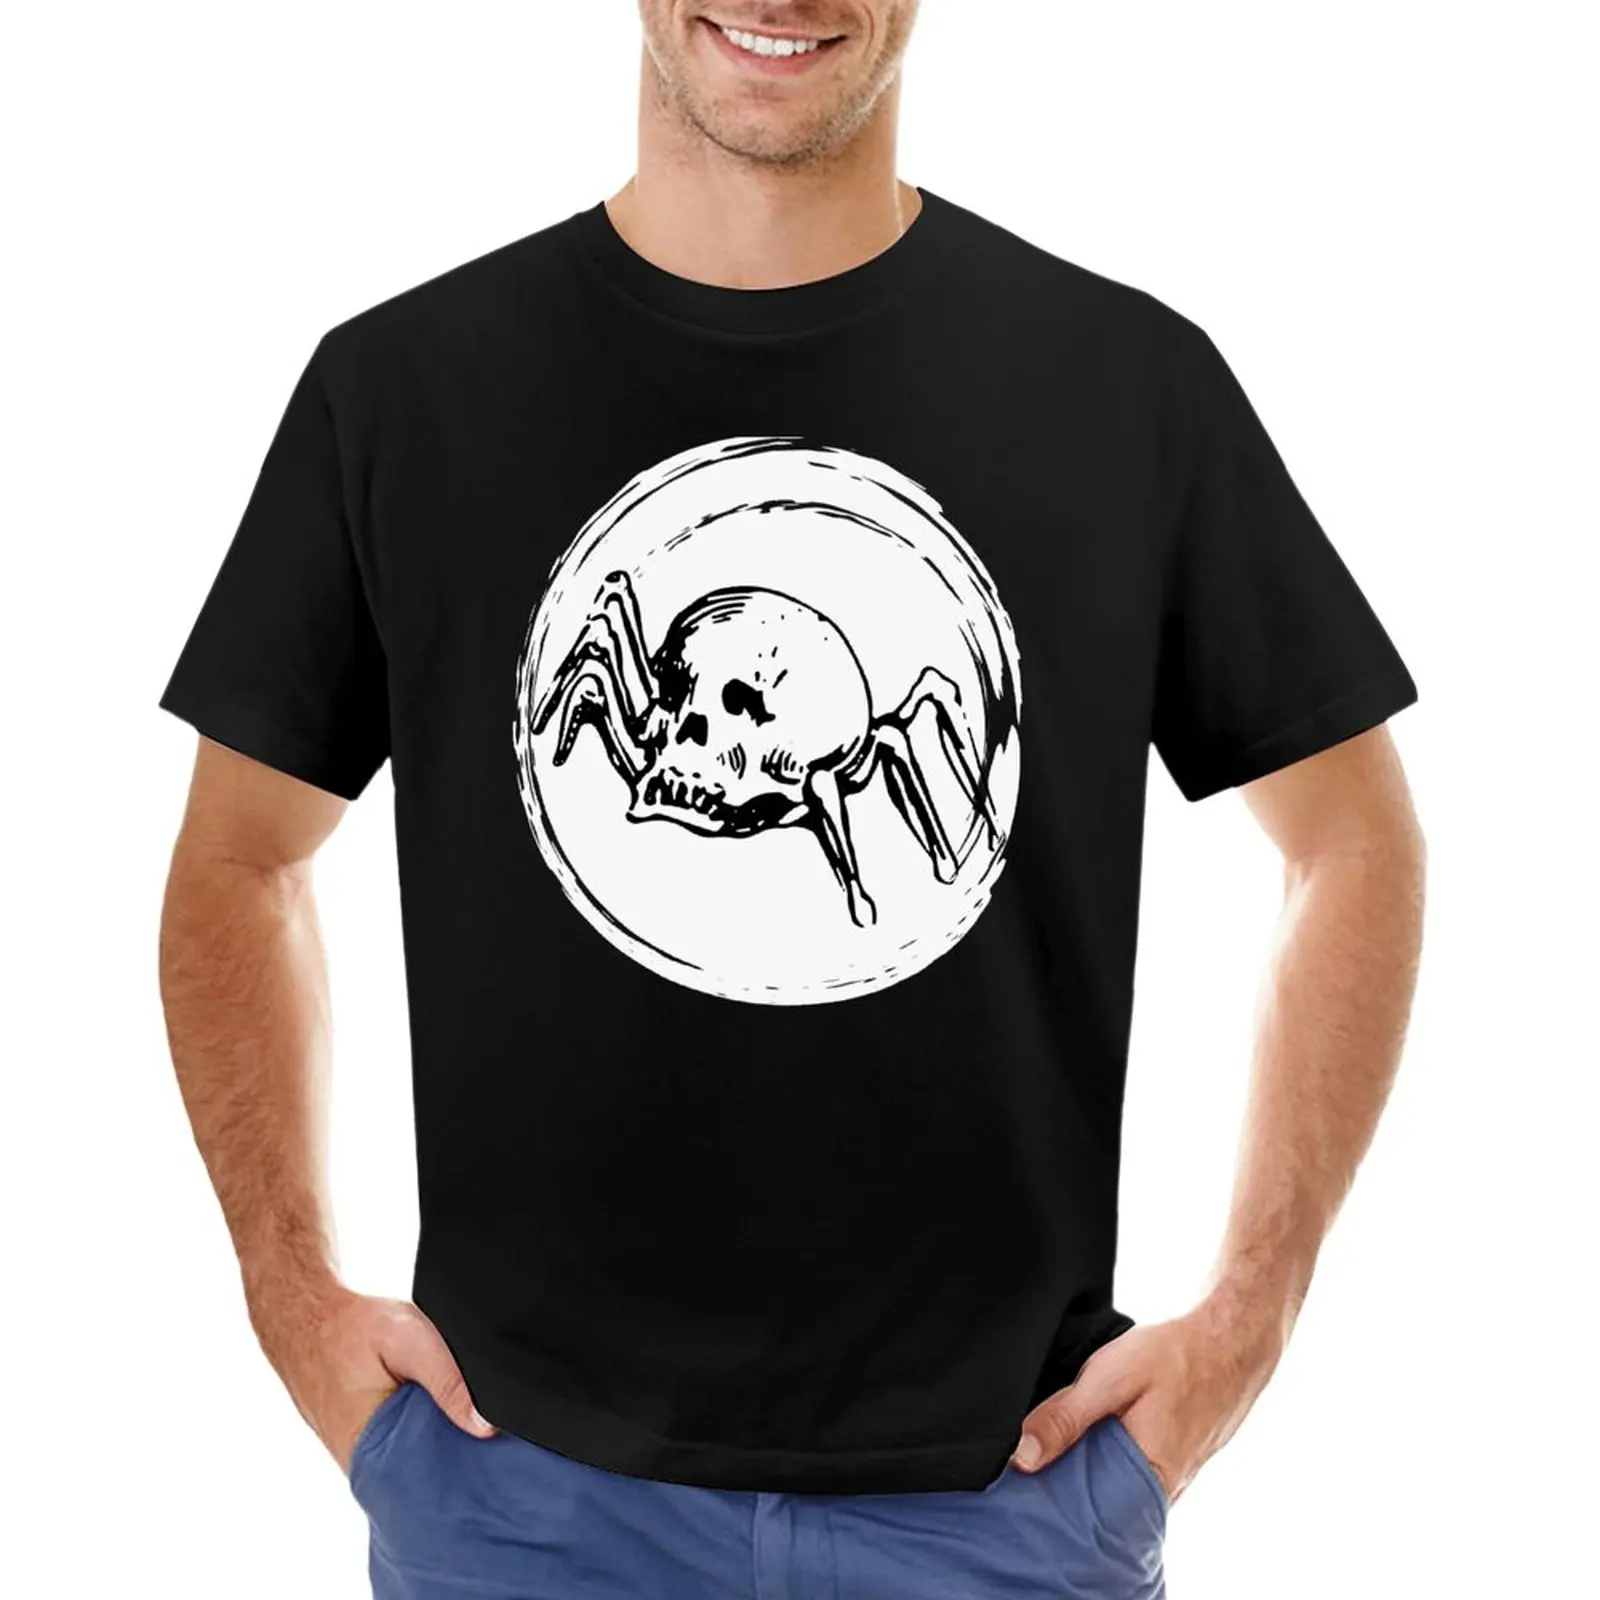 Футболка в стиле ретро с черепом паука, футболки больших размеров, футболки оверсайз для мужчин Изображение 0